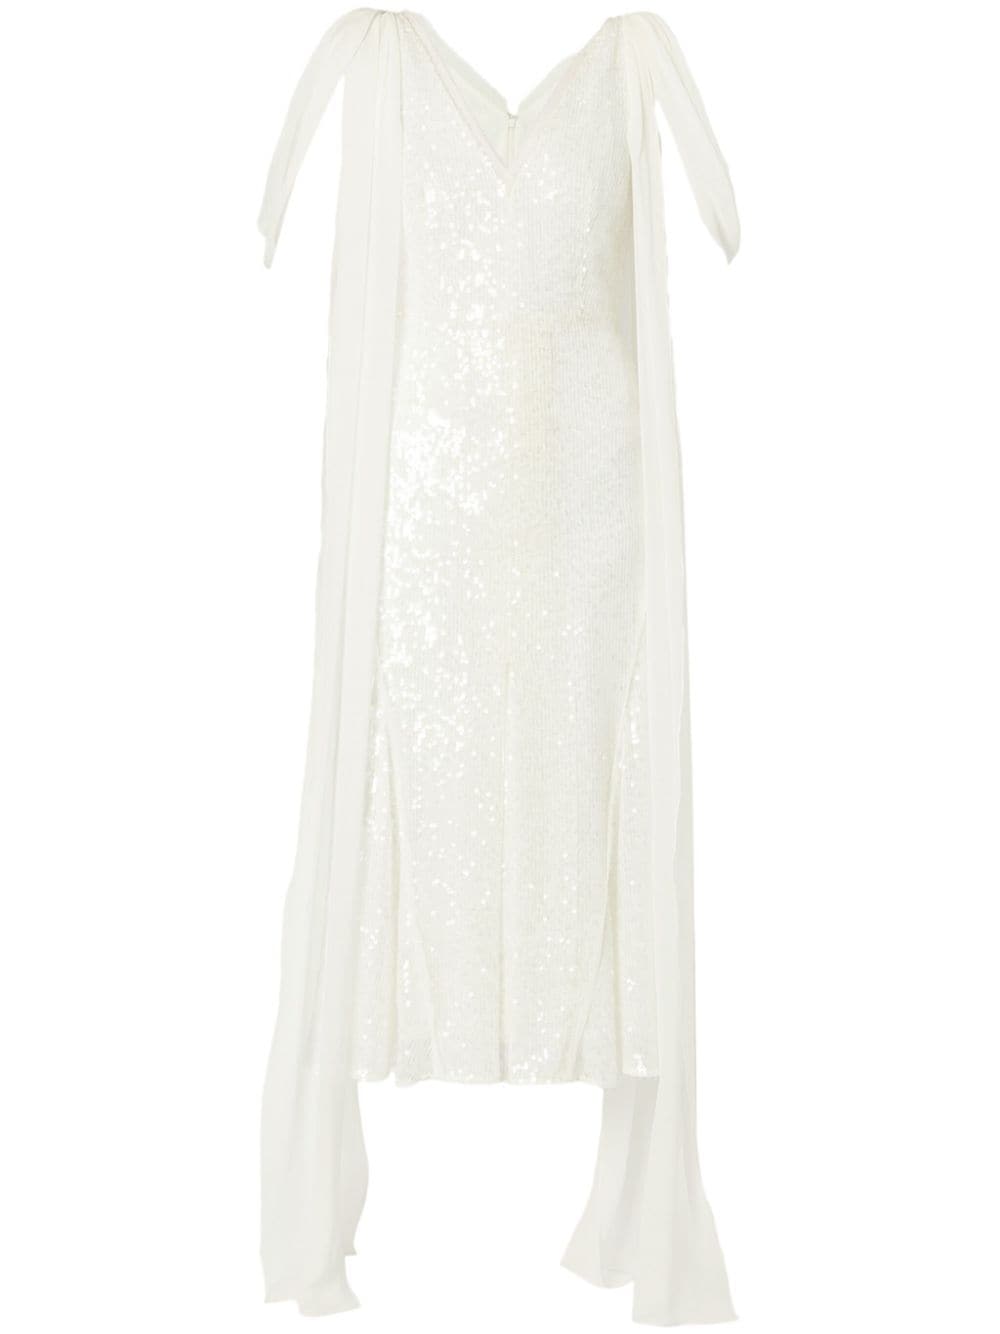 ERDEM draped-detailing sequined dress - White